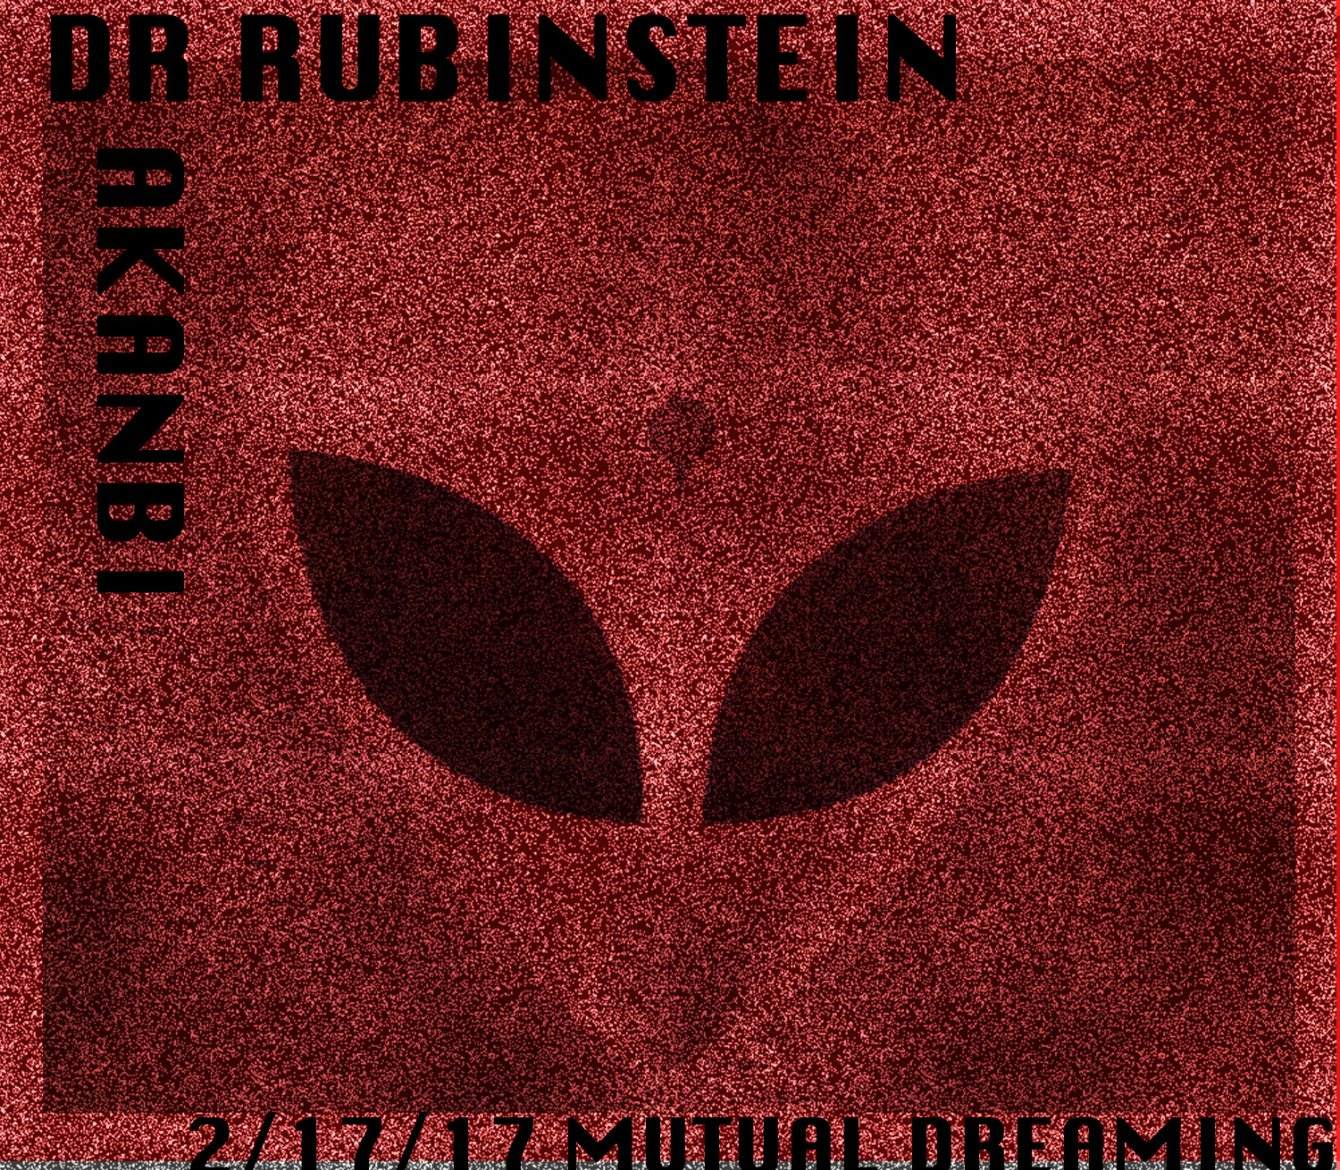 Mutual Dreaming: Dr Rubinstein + Akanbi - Página frontal